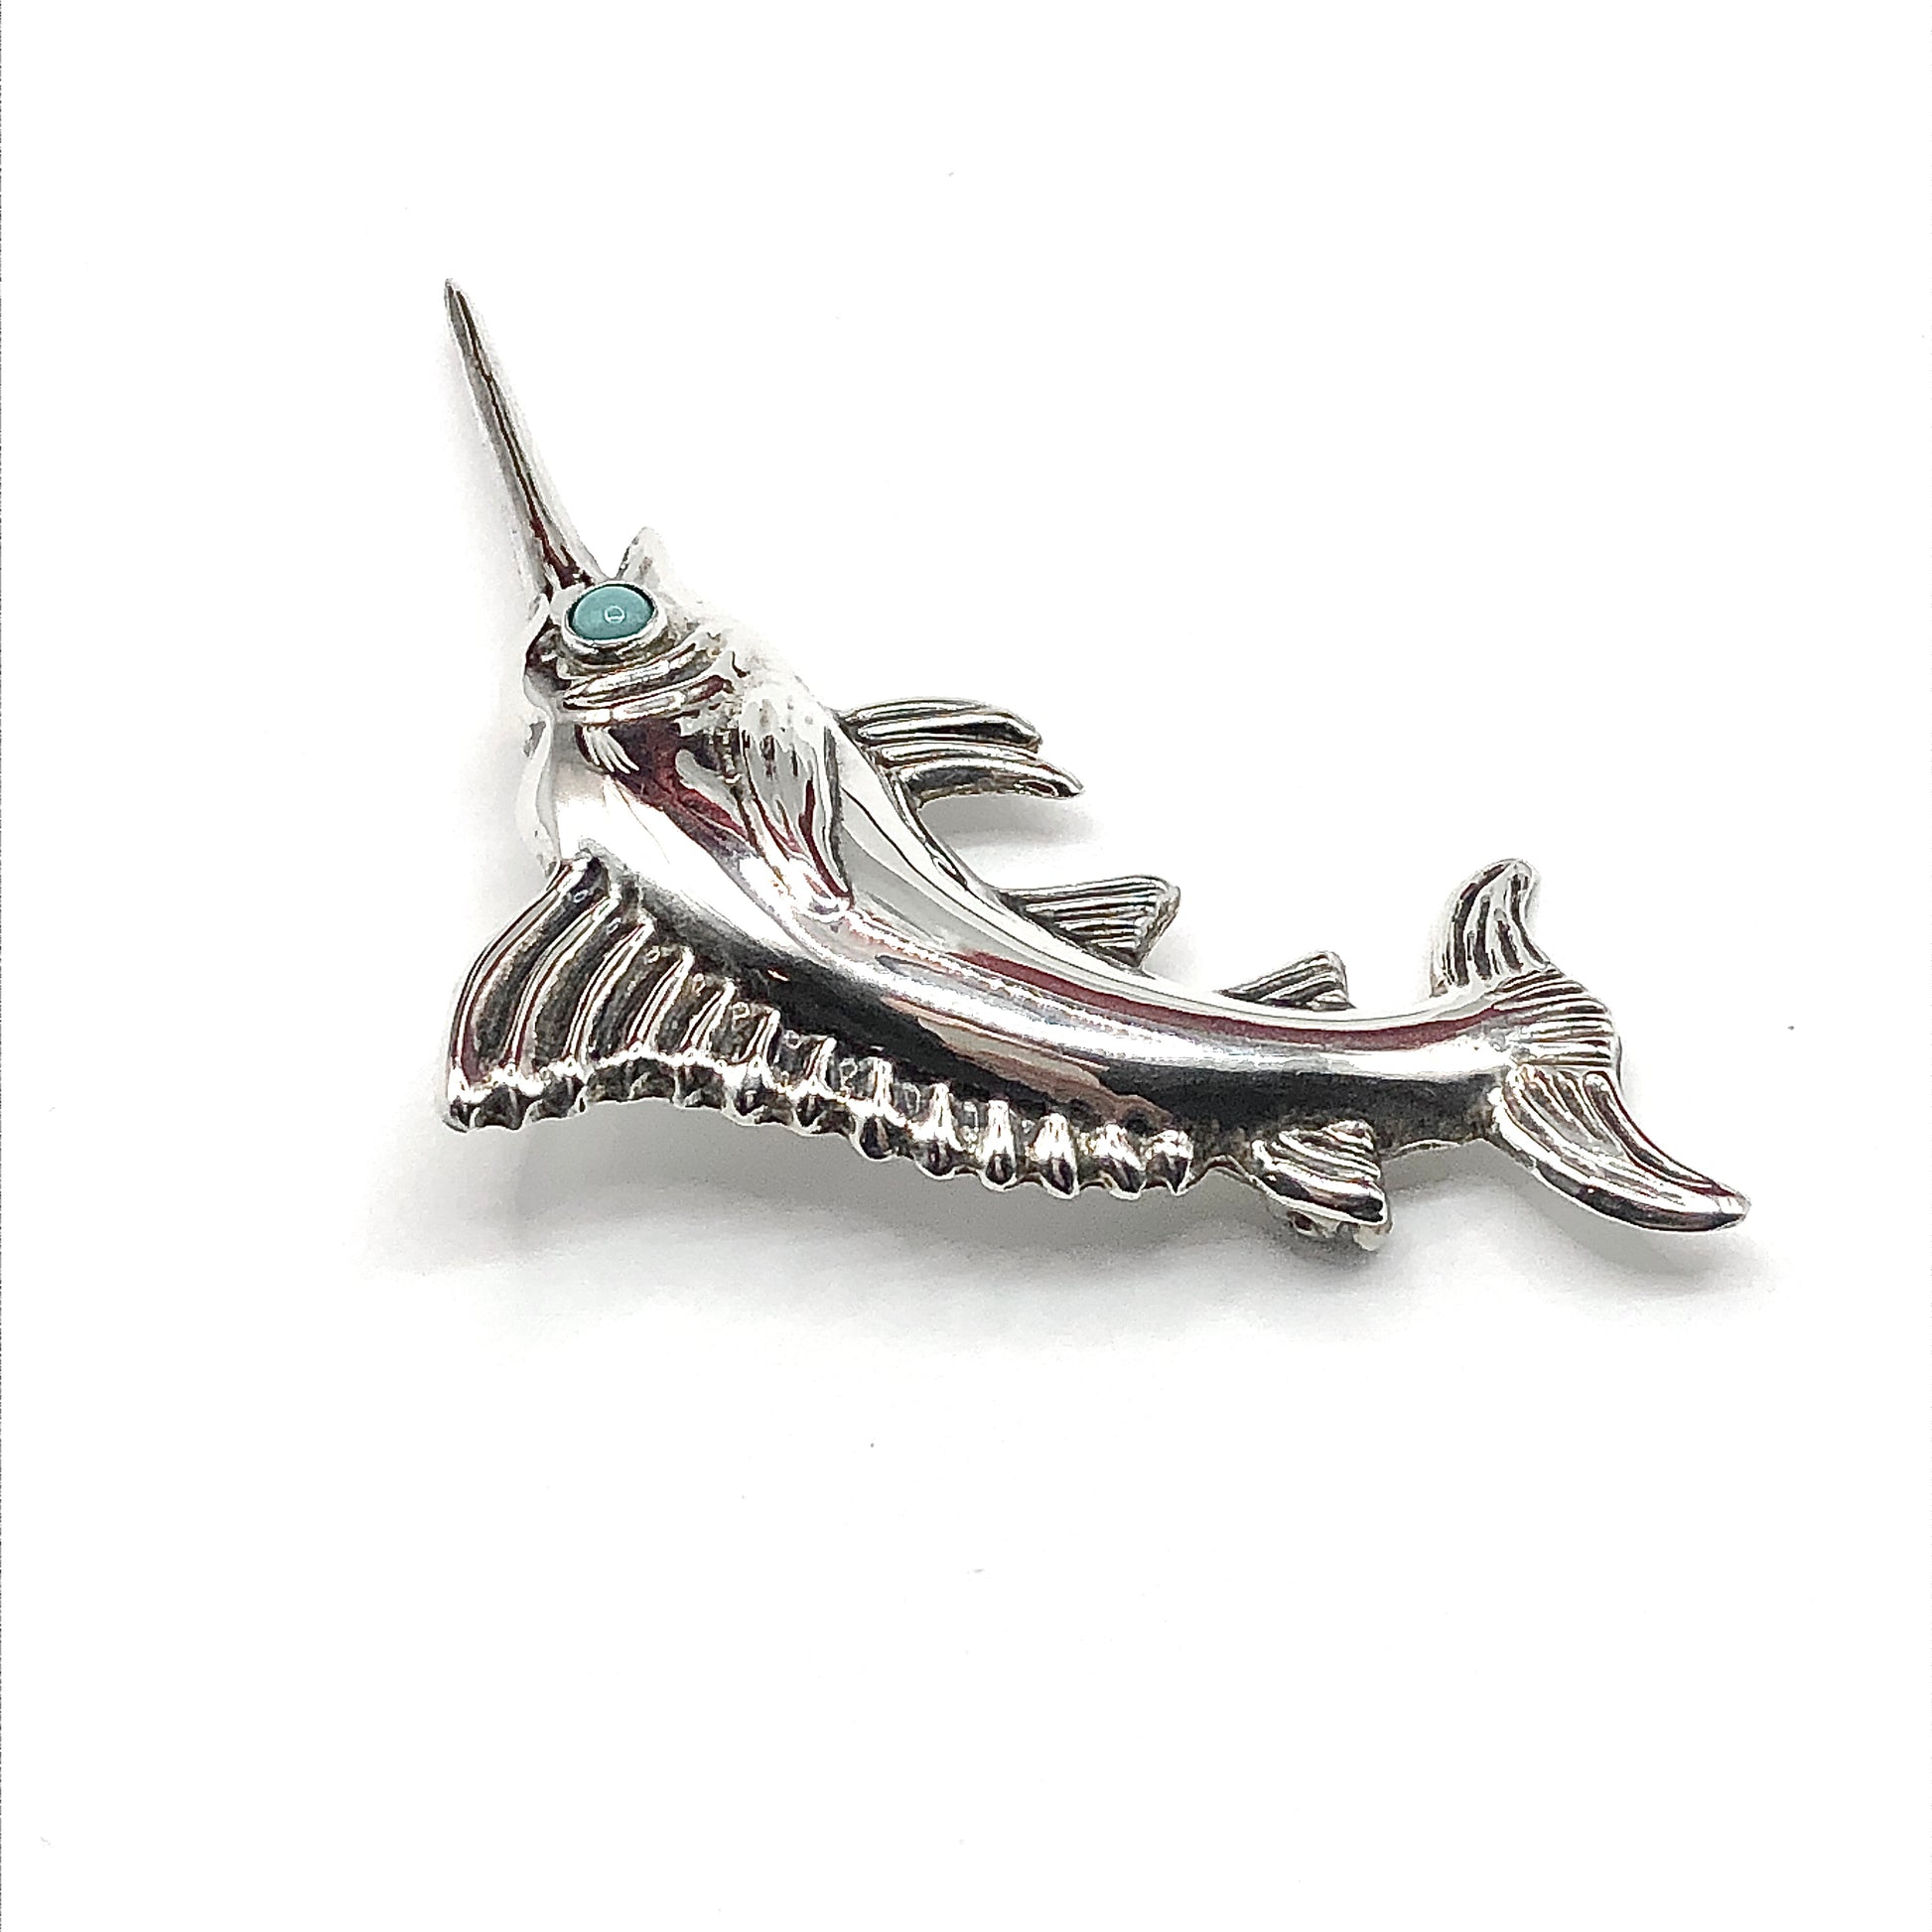 Blingschlingers Jewelry Sterling Silver Brooch, Men Women Vintage Blue Marlin Swordfish Style Brooch Lapel Pin